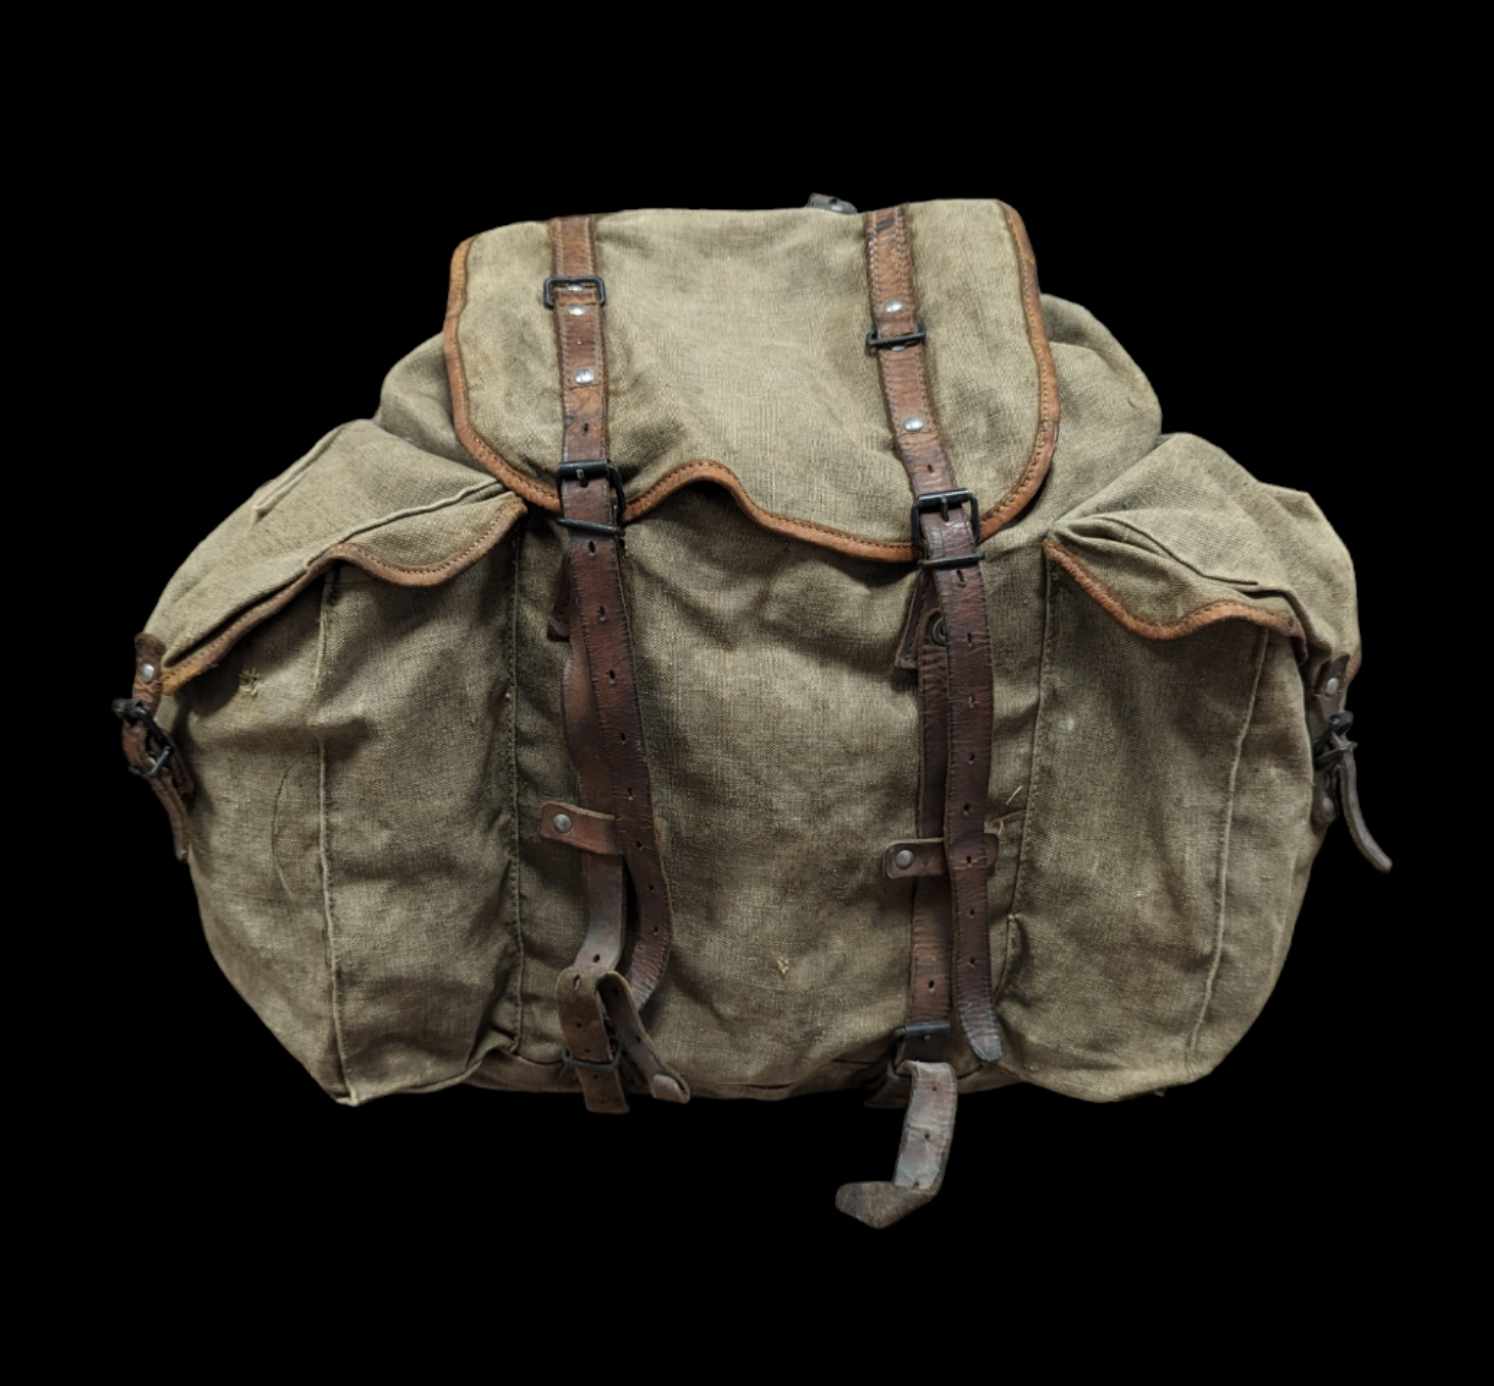 militaria : sac à dos armée Française 1957 Algérie / French army backpack 1957